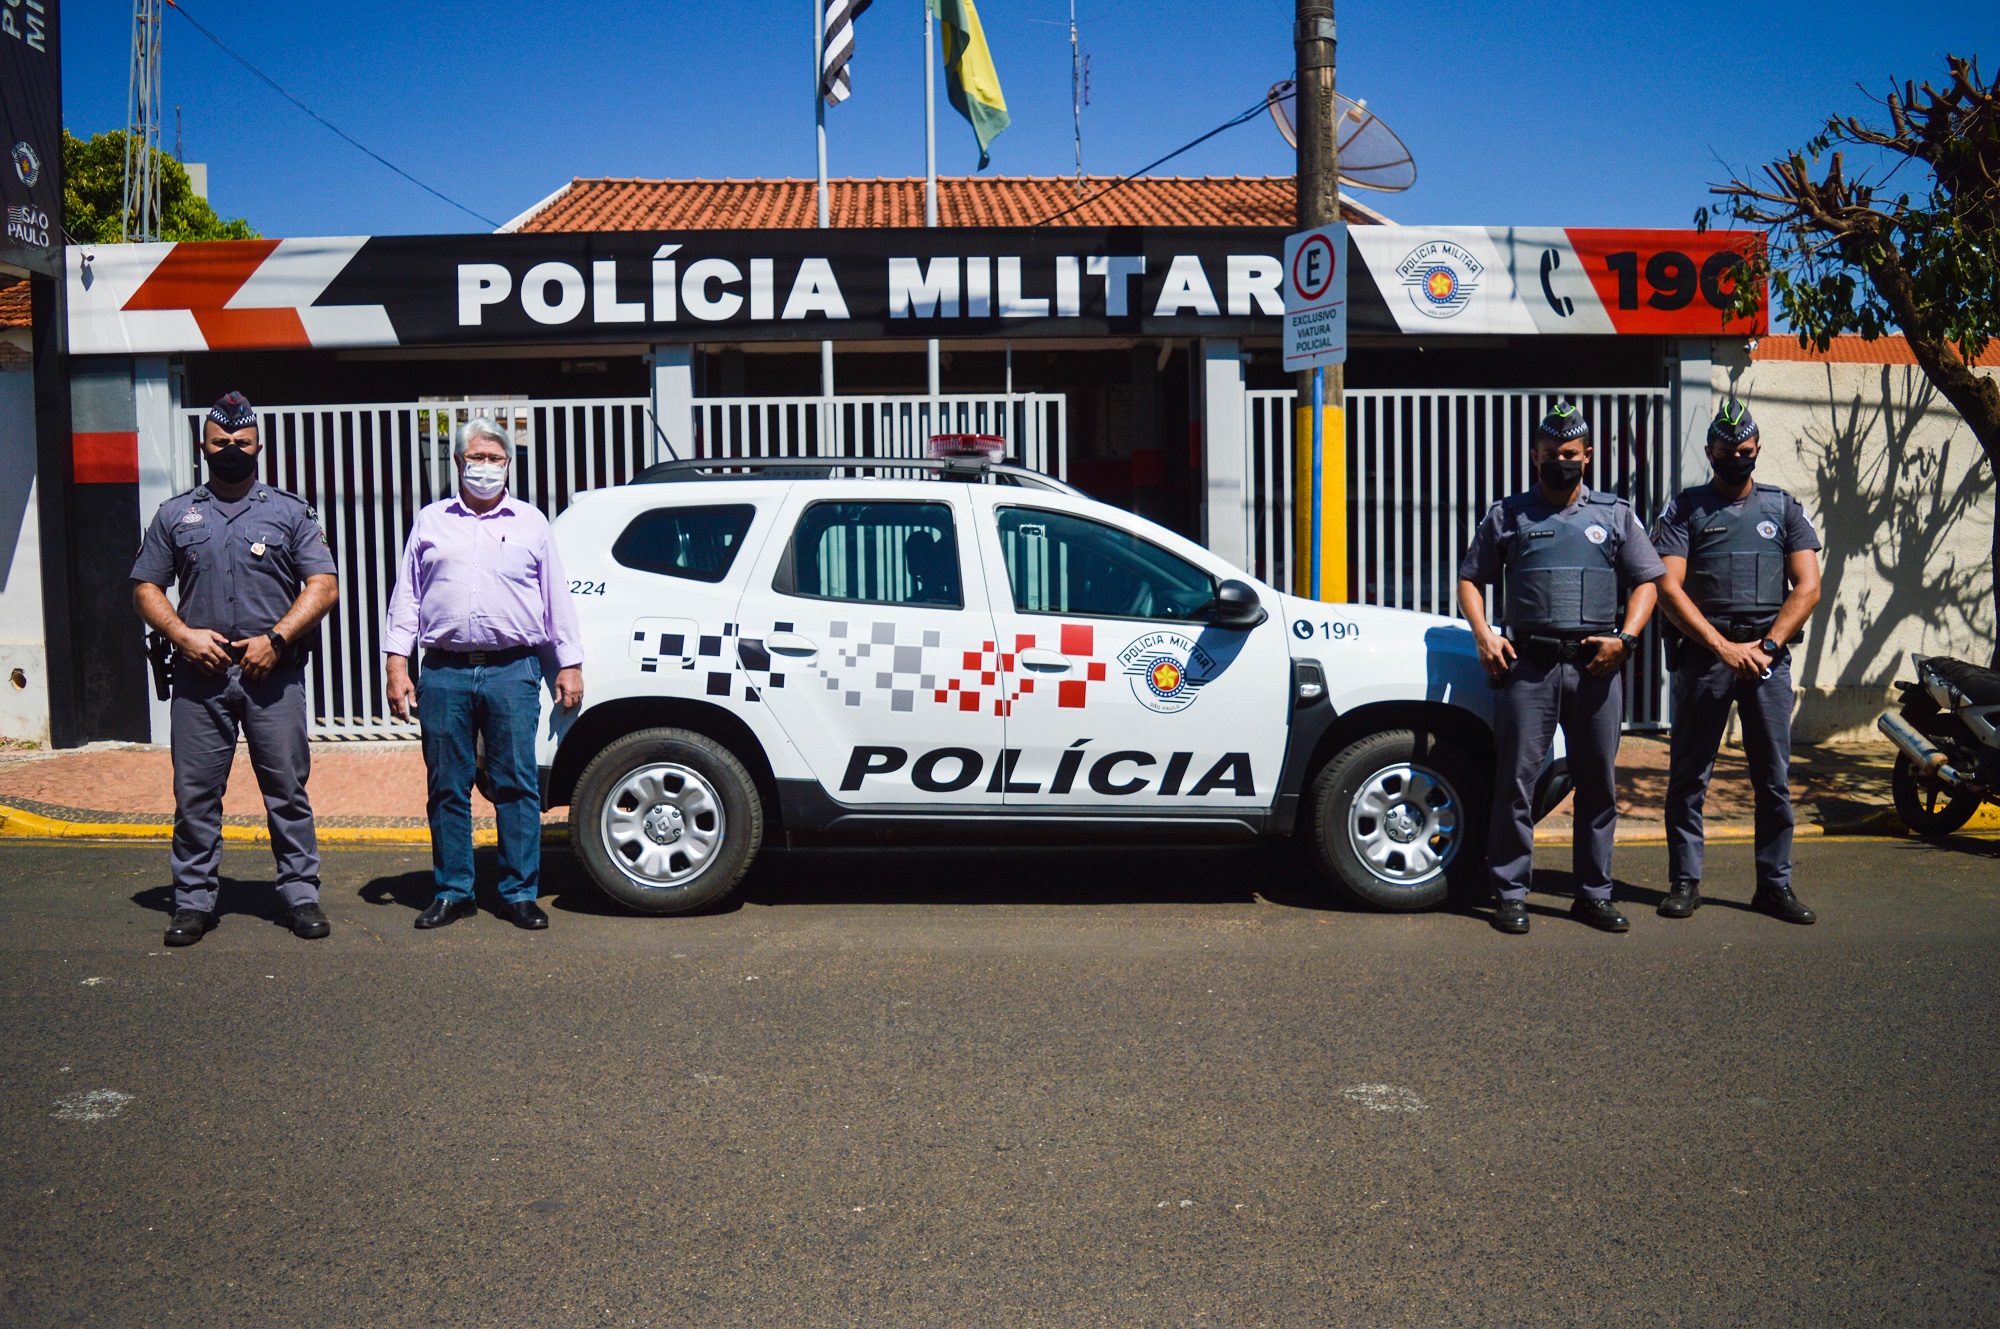 Imagem registrada em 14/04/2021, na chegada do novo veículo para a Polícia Militar de Urupês, e mostra a fachada do quartel. Foto: Luís Fernando da Silva / Prefeitura Municipal de Urupês